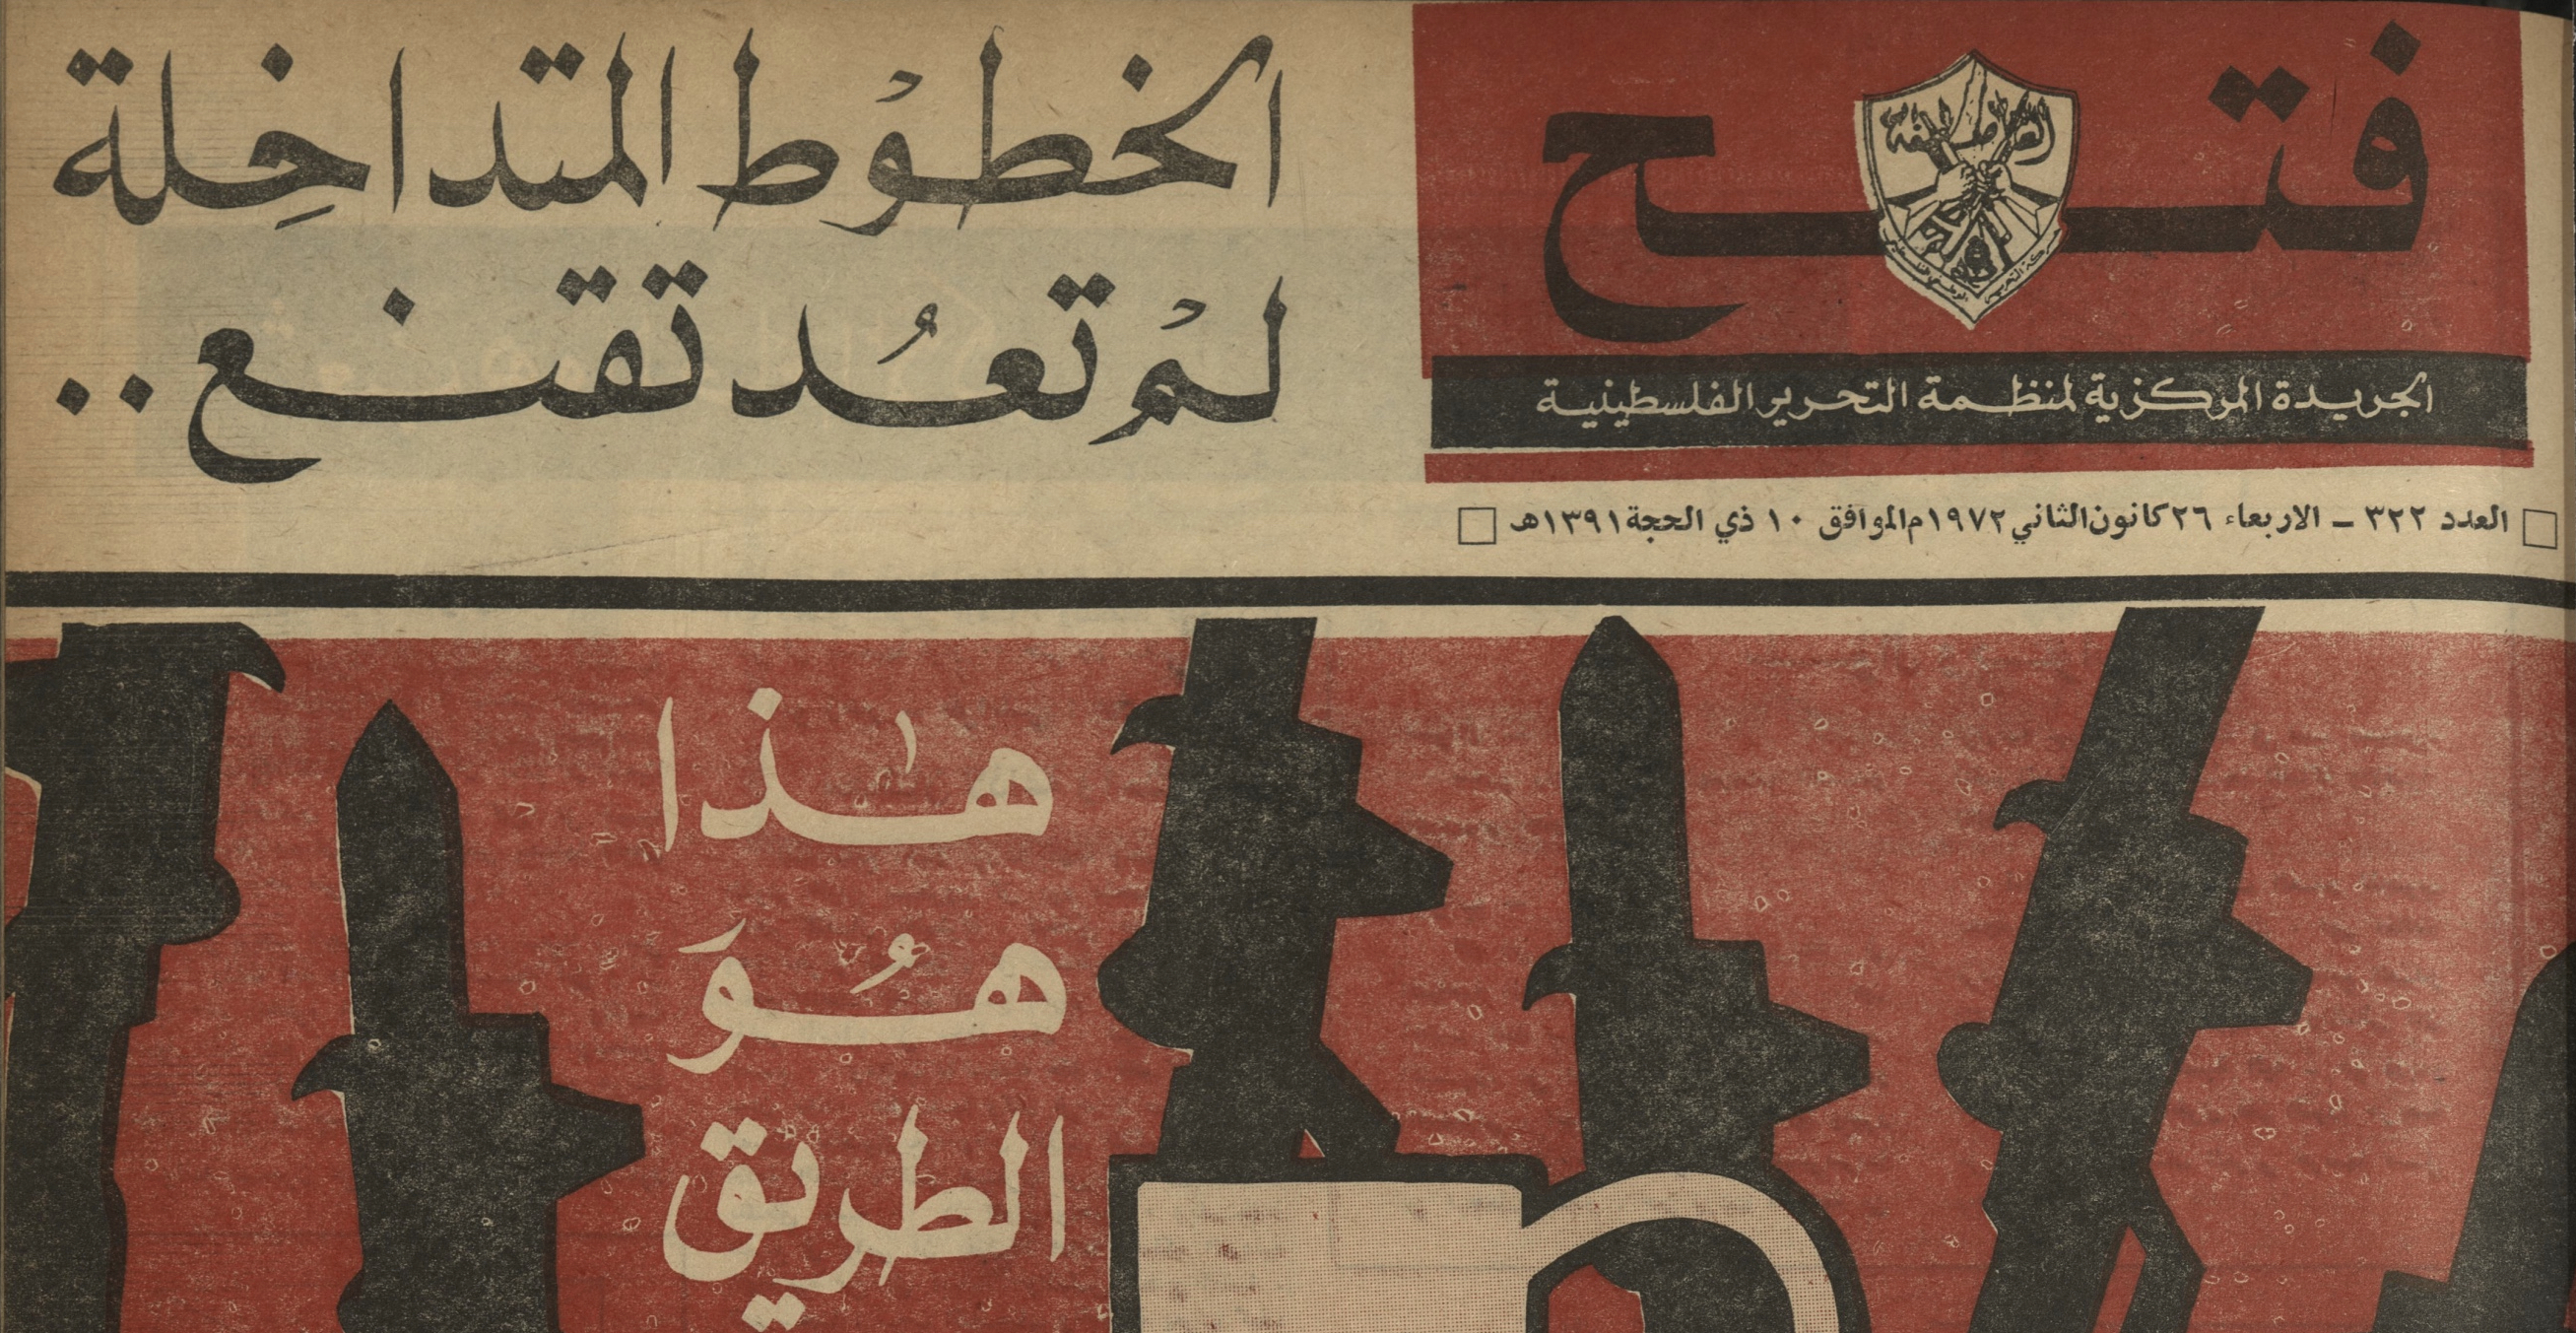 المرأة في صحافة الثورة (1): المرأة سياسيةً ومقاتلةً بين سطور جريدة فتح